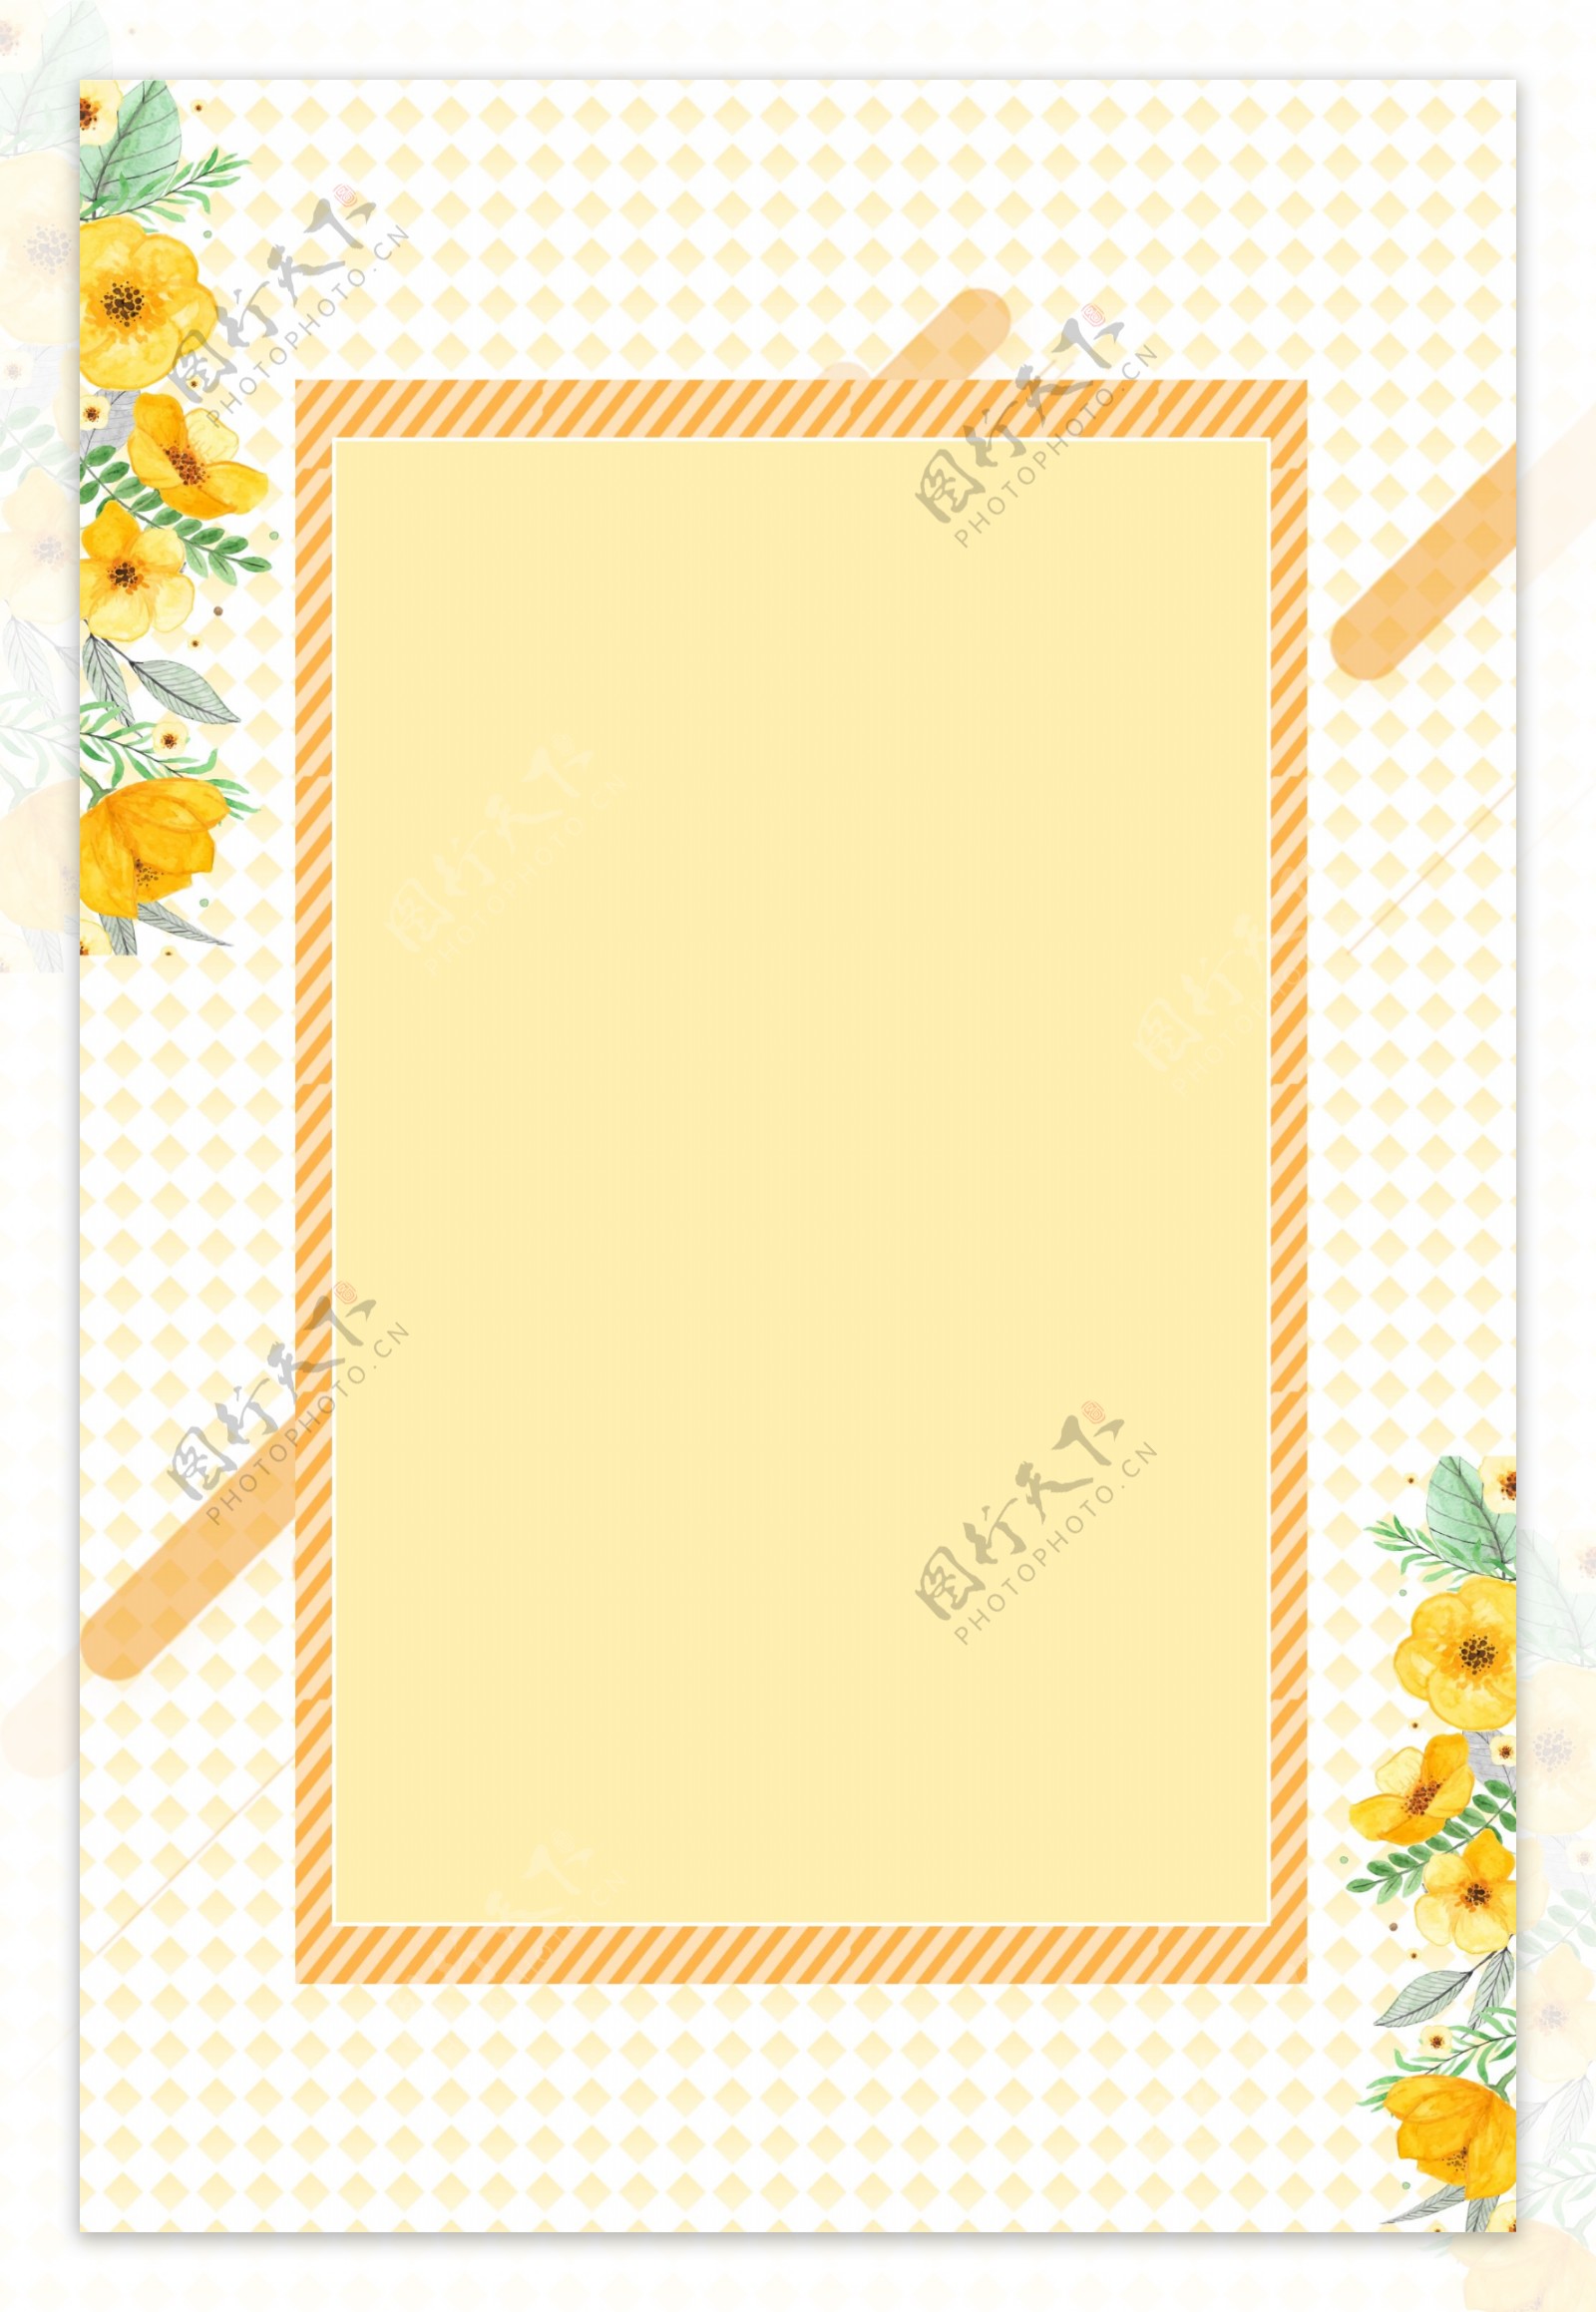 小清新黄色花朵边框海报